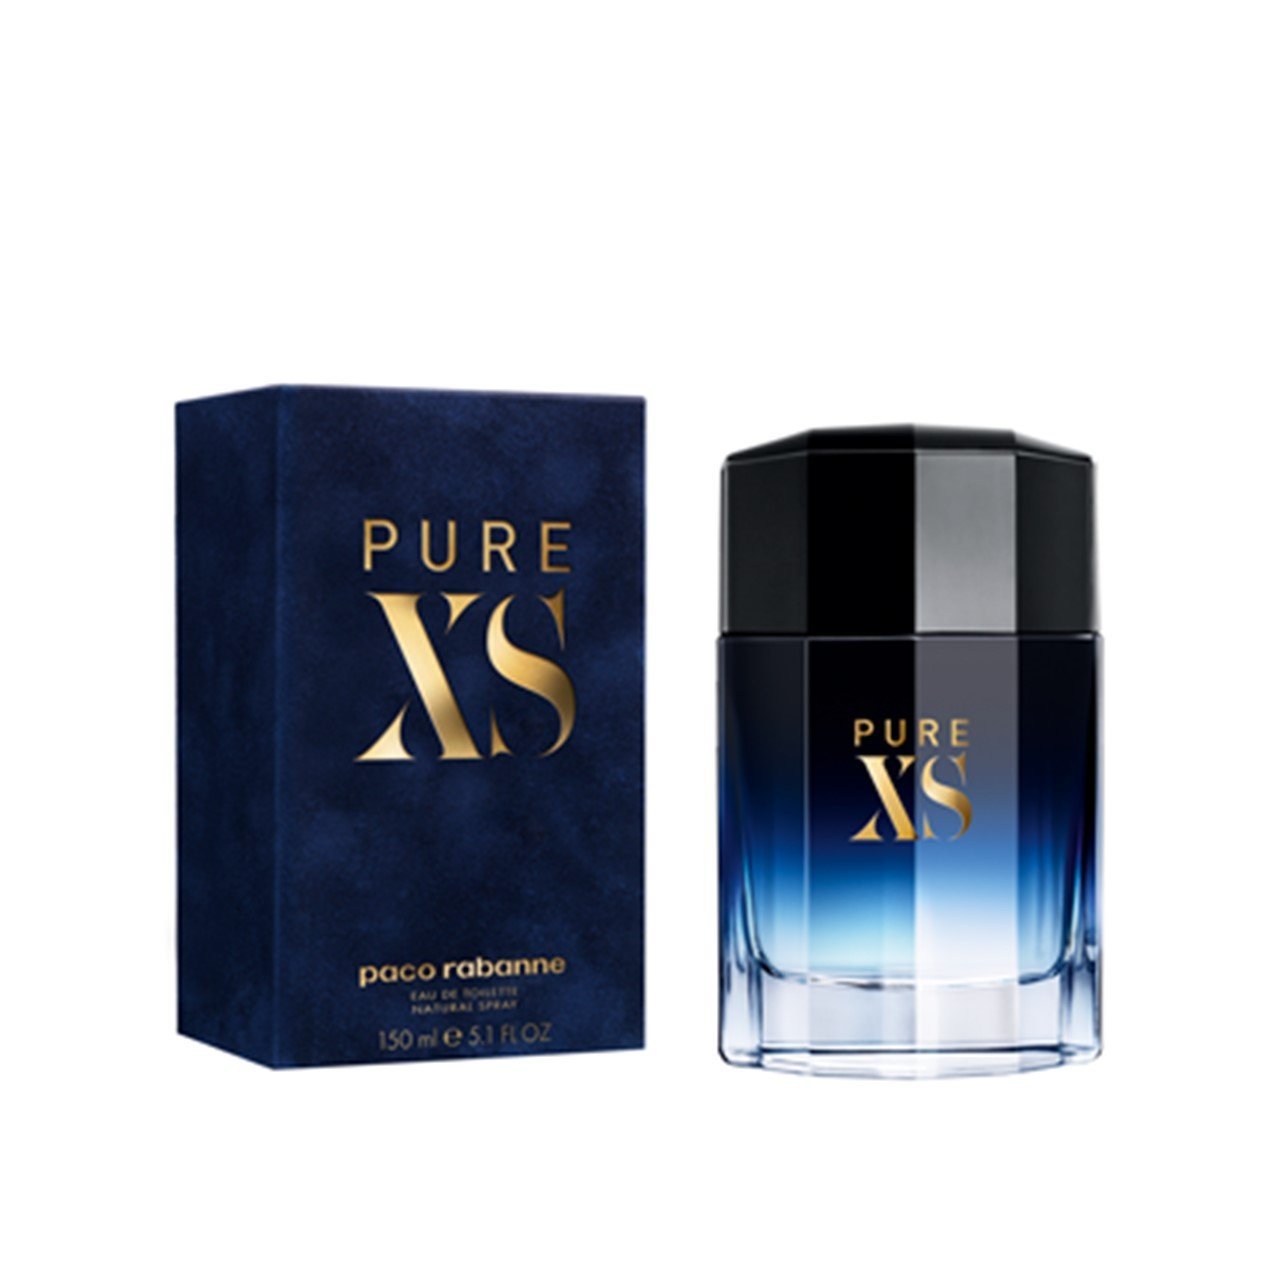 Buy Paco Rabanne Pure XS For Men Eau de Toilette 150ml · Philippines